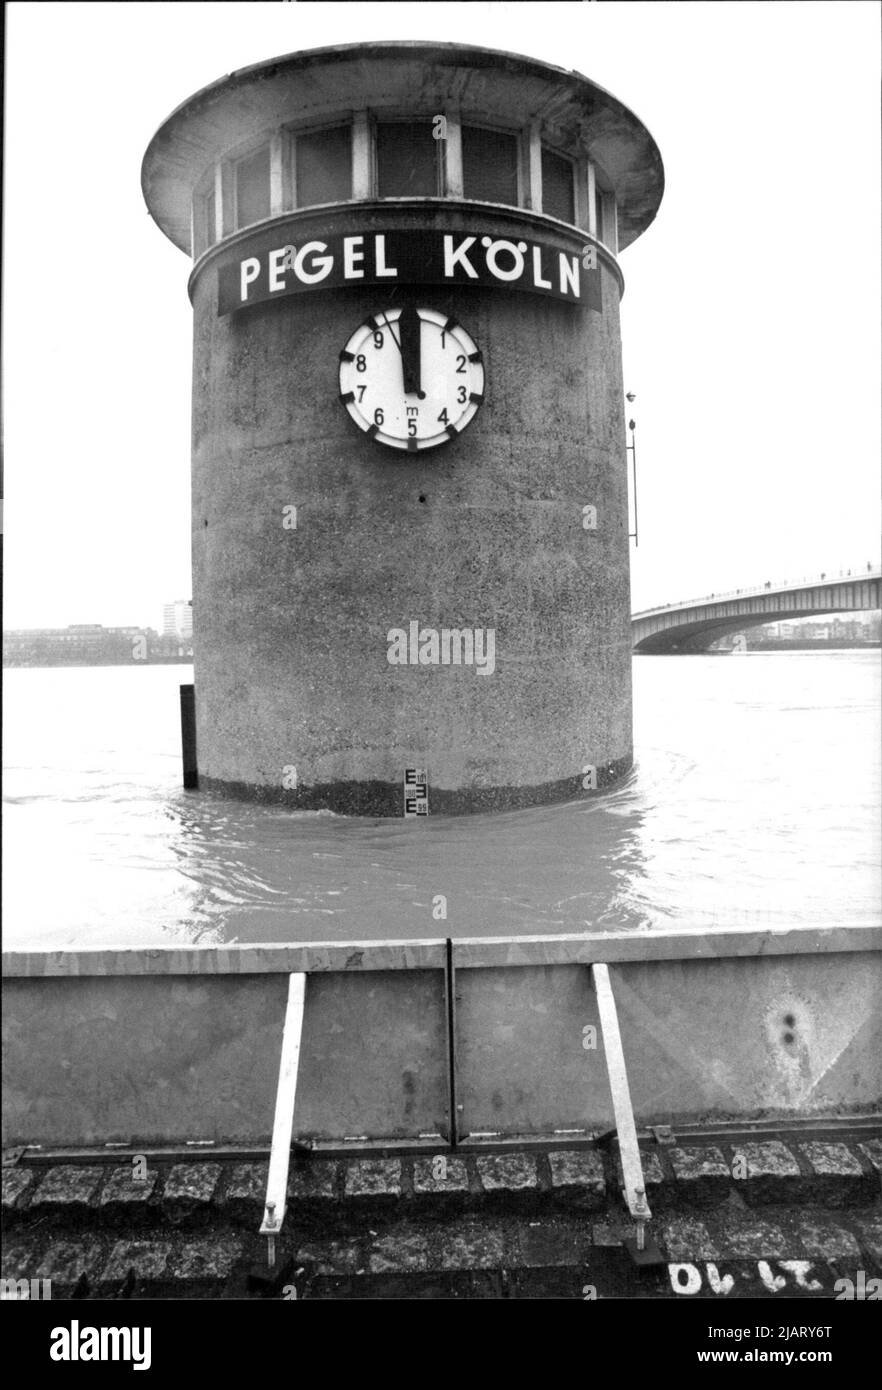 Hochwasserkatastrophe im gesamten Bundesgebiet: Der Wasserpegel in Köln. Nur noch wenige Zentimeter bis zur 10 Meter Marke. Danach wird die Altstadt überschwemmt. Stock Photo